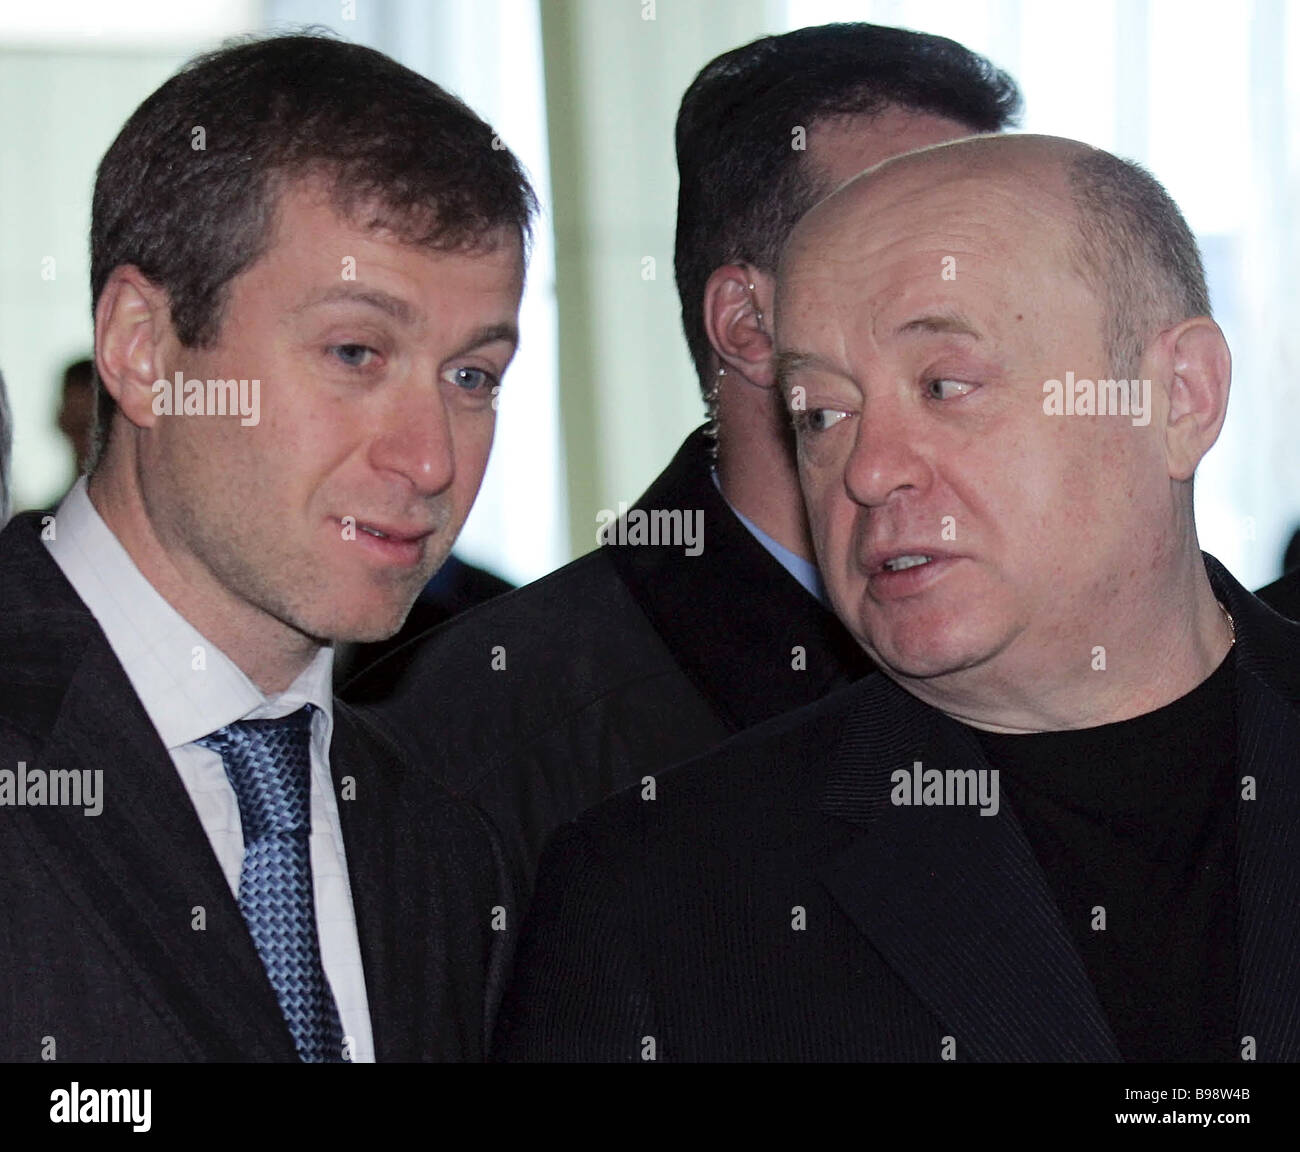 Von Links Nach Rechts Roman Abramovich Gouverneur Von Tschukotka Und Der Russische Premierminister Mikhail Fradkov Stockfotografie Alamy